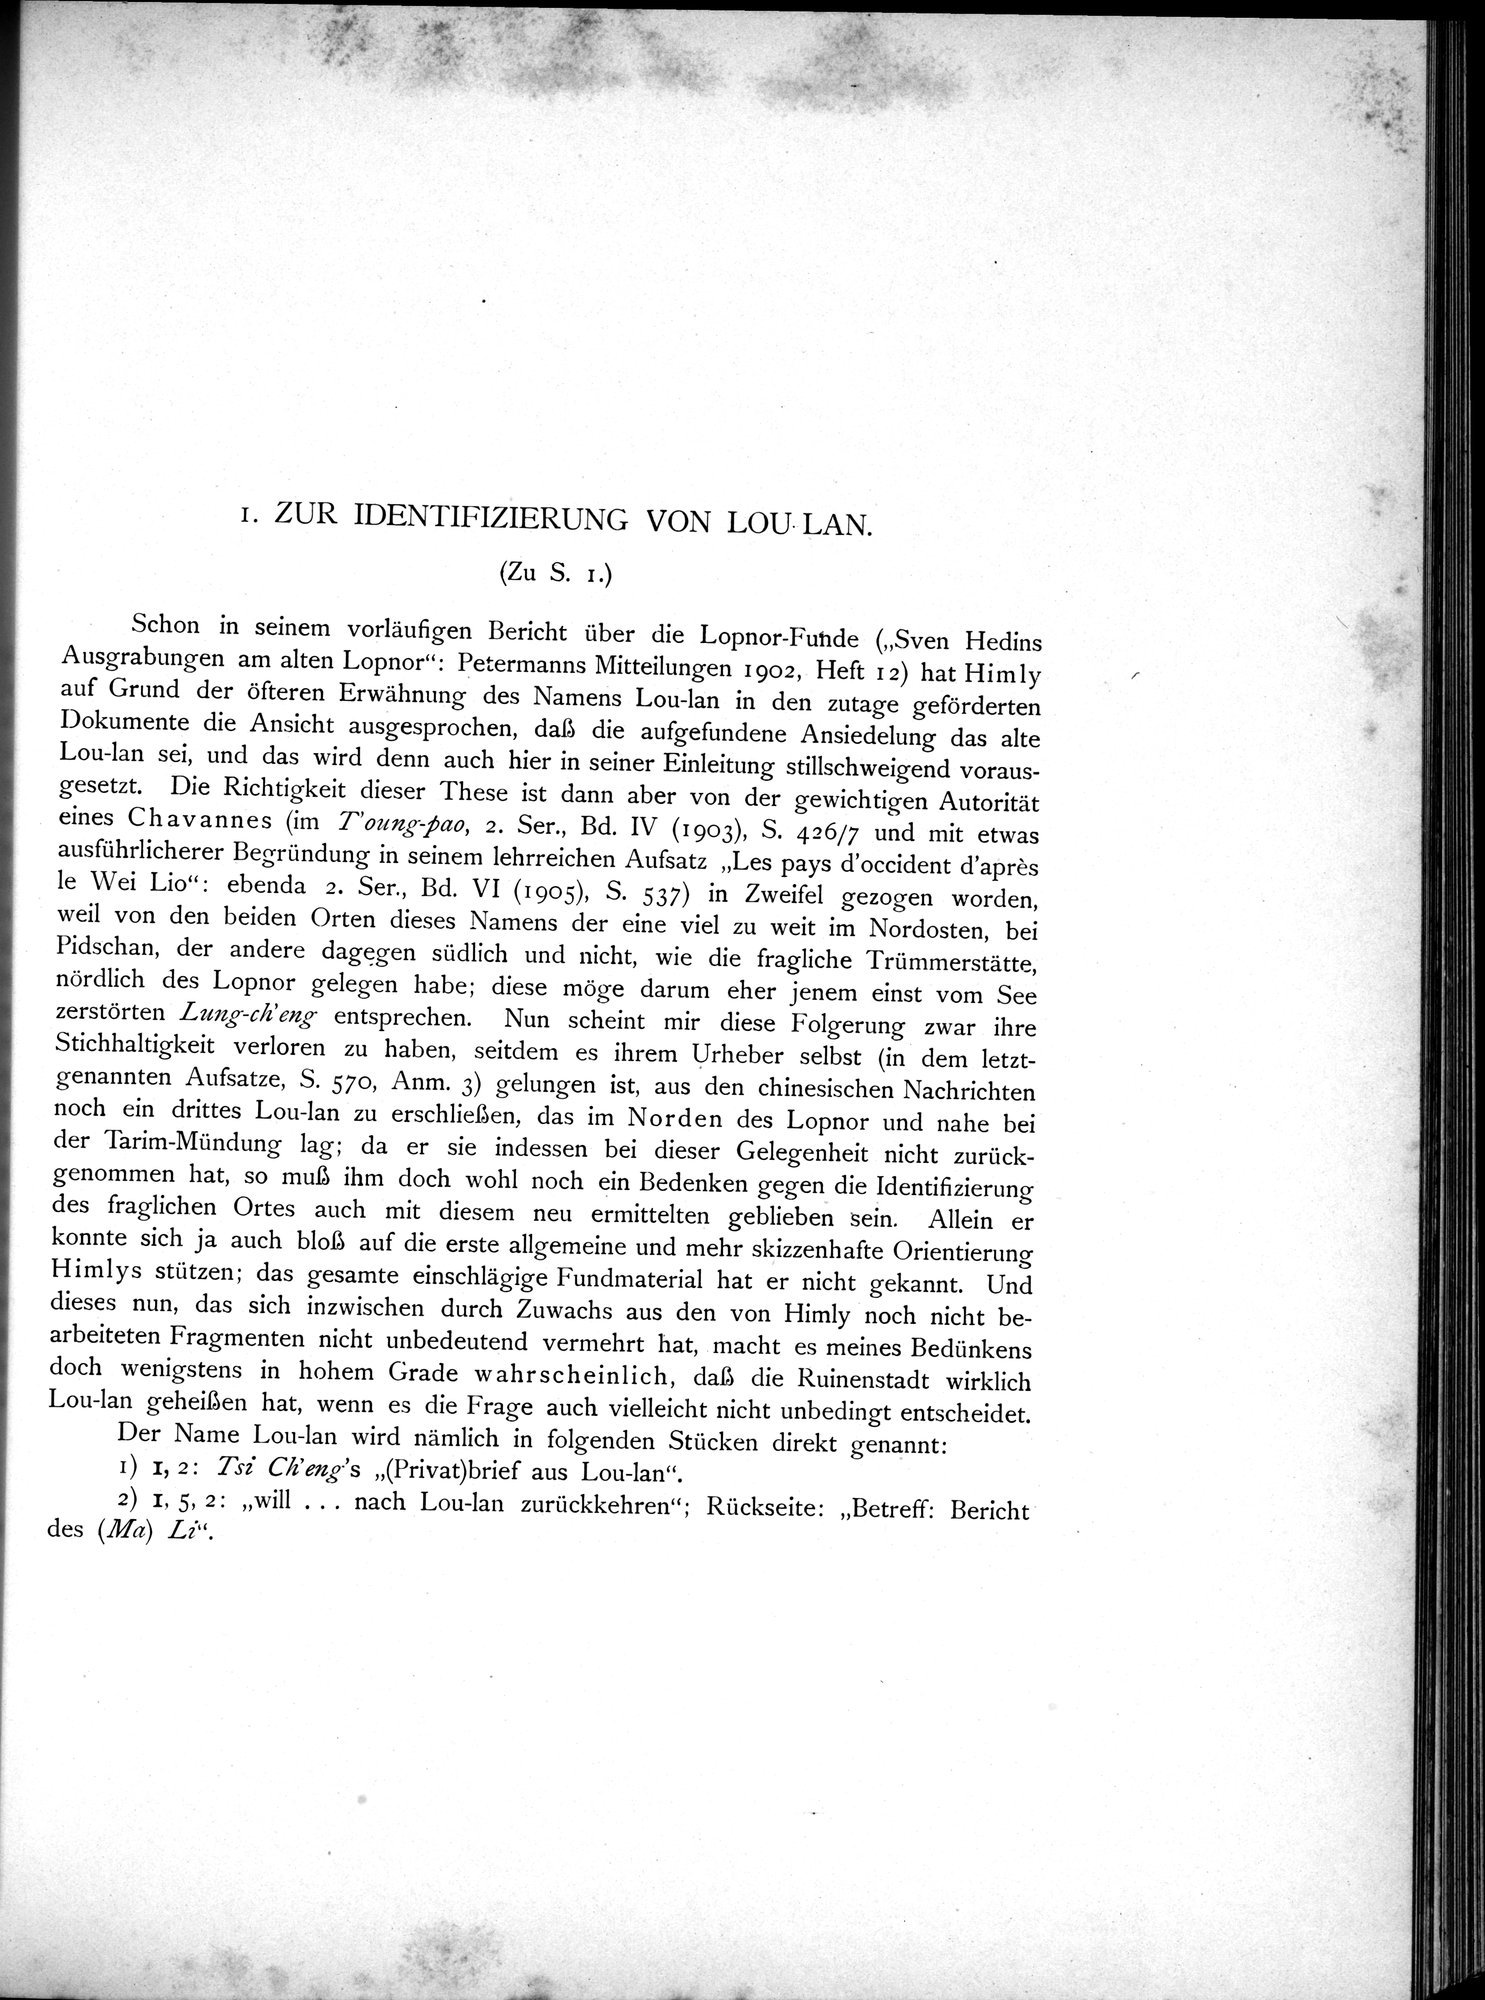 Die Chinesischen Handschriften- und sonstigen Kleinfunde Sven Hedins in Lou-lan : vol.1 / Page 167 (Grayscale High Resolution Image)